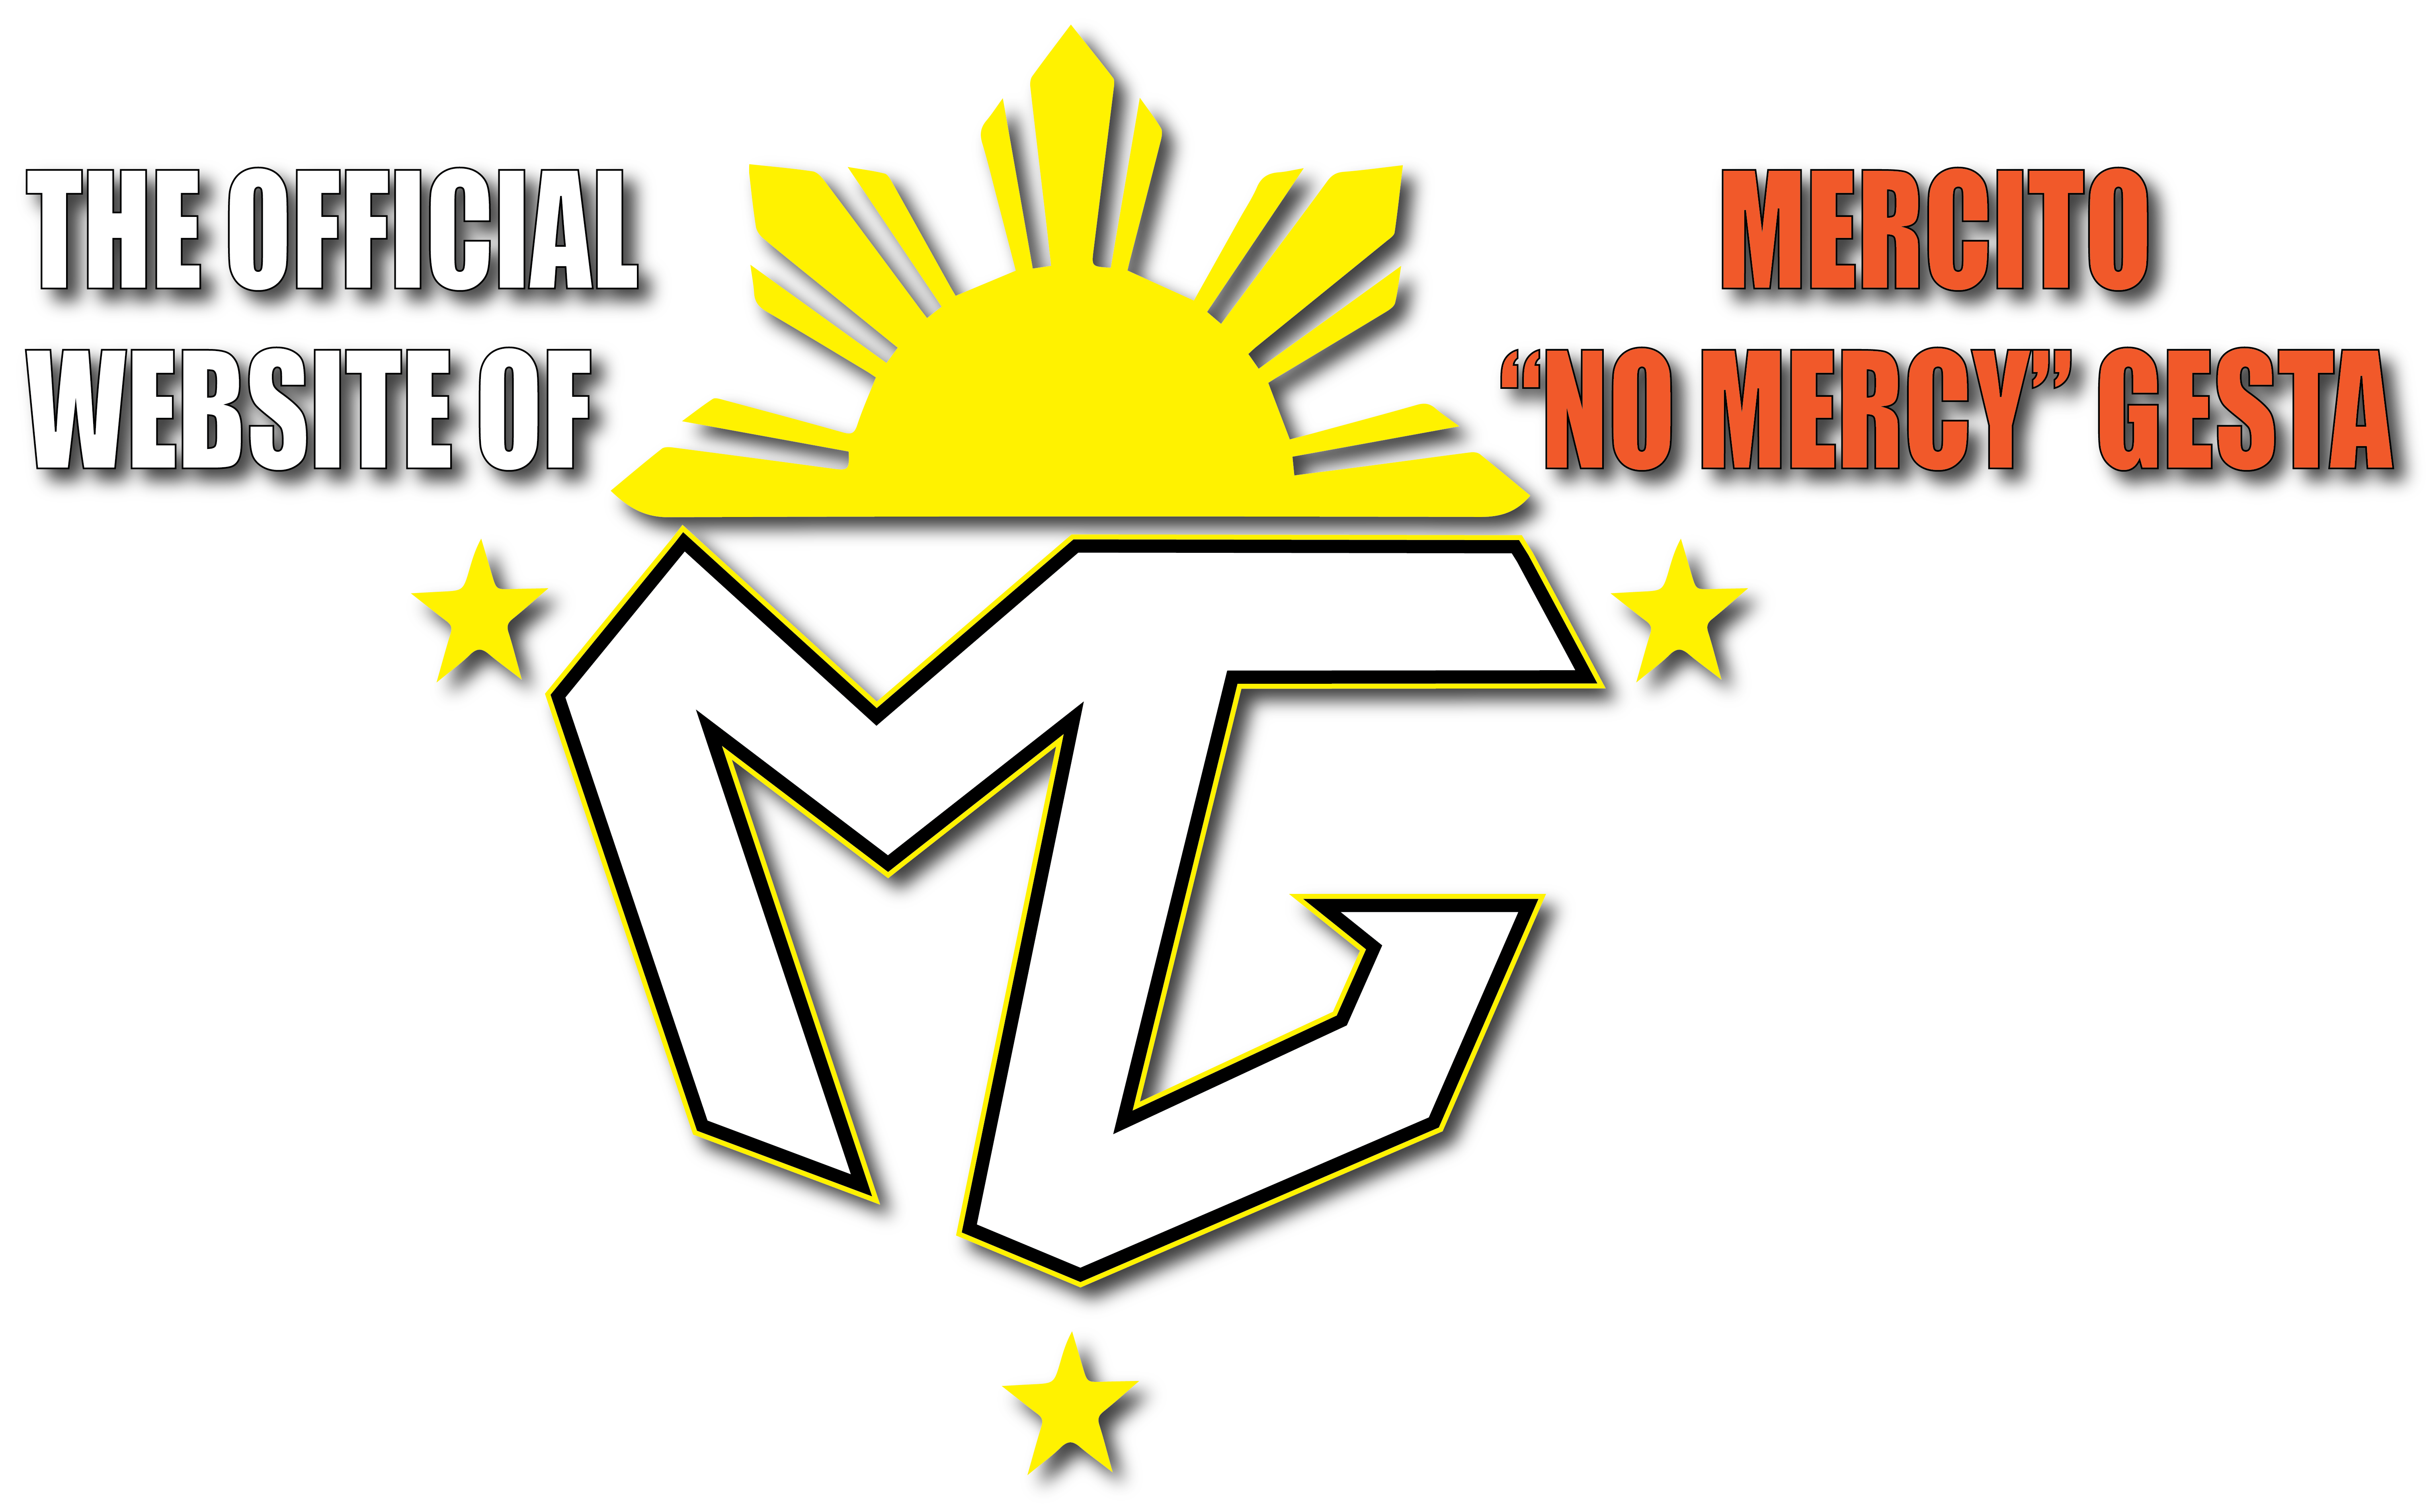 Mercito "No Mercy" Gesta